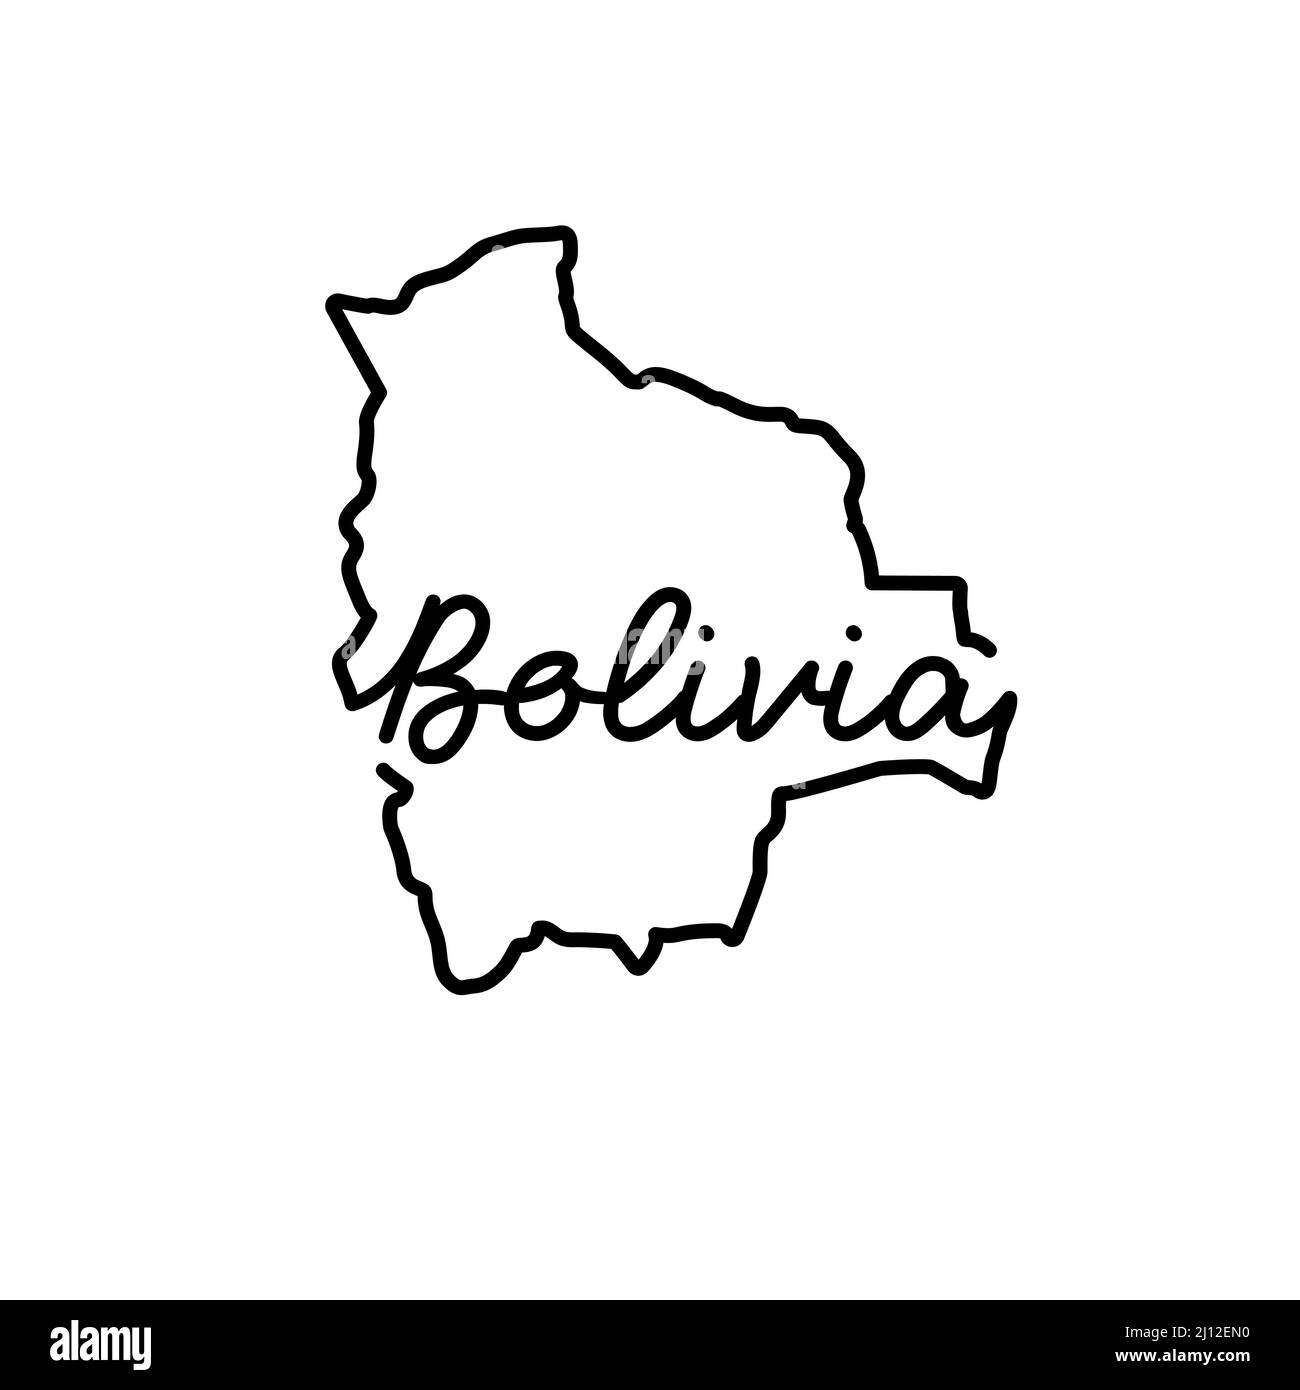 Bolivien skizzieren Karte mit dem handschriftlichen Namen des Landes. Kontinuierliche Linienzeichnung des patriotischen Heimatzeichens. Eine Liebe für eine kleine Heimat. Idee mit T-Shirt-Druck Stock Vektor